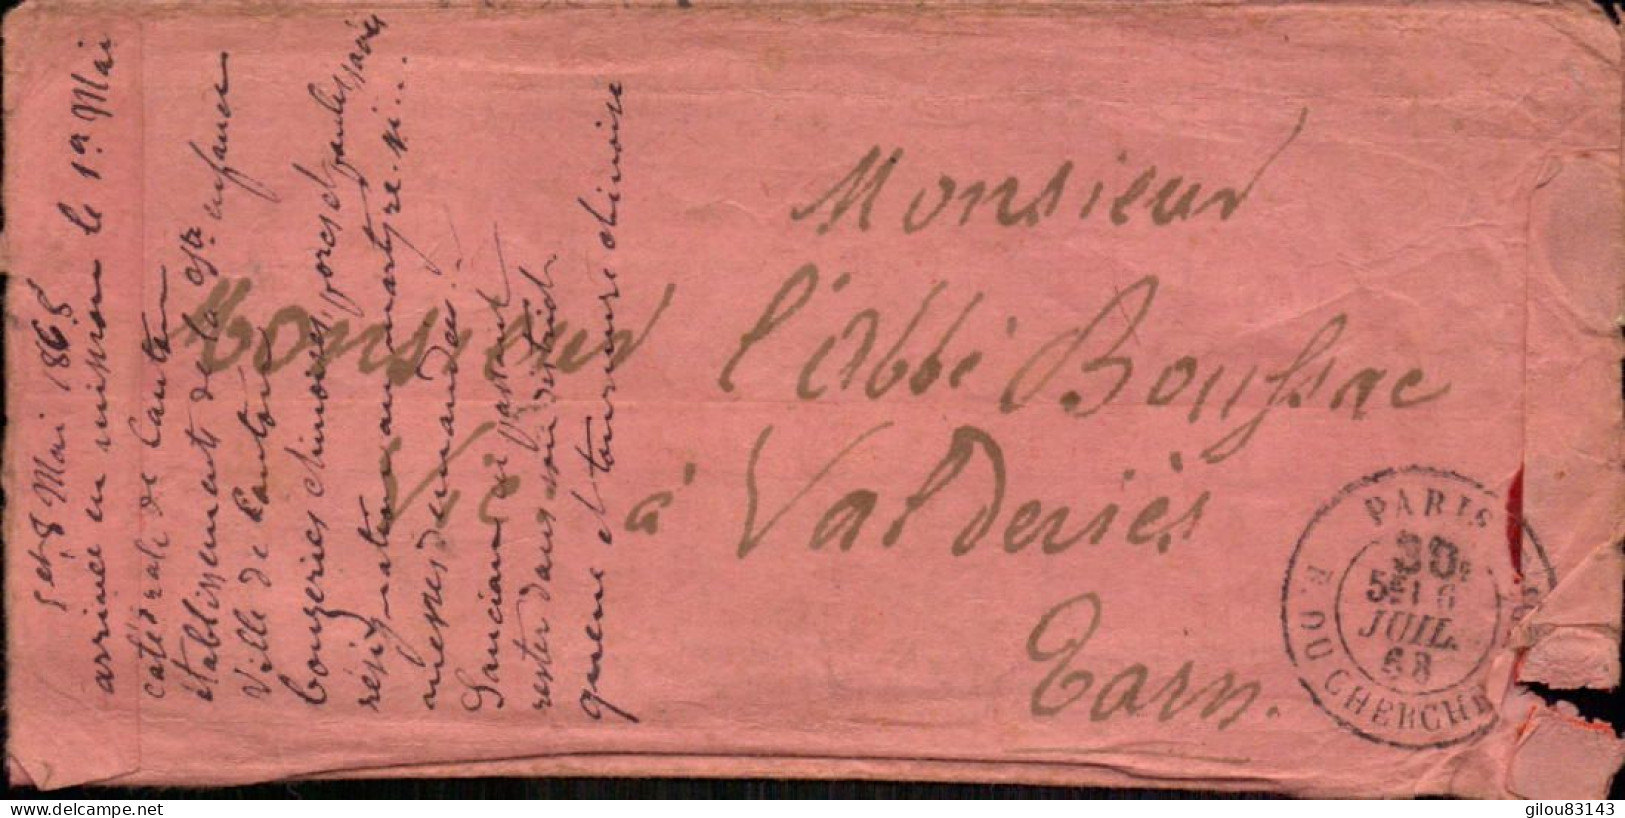 Lettre De Canton Chine, Ile De Canton Pour La France Abbè Boussac à Valderiés, Perigueux à Toulouse, Albi, Tarn, 1868 - Brieven En Documenten